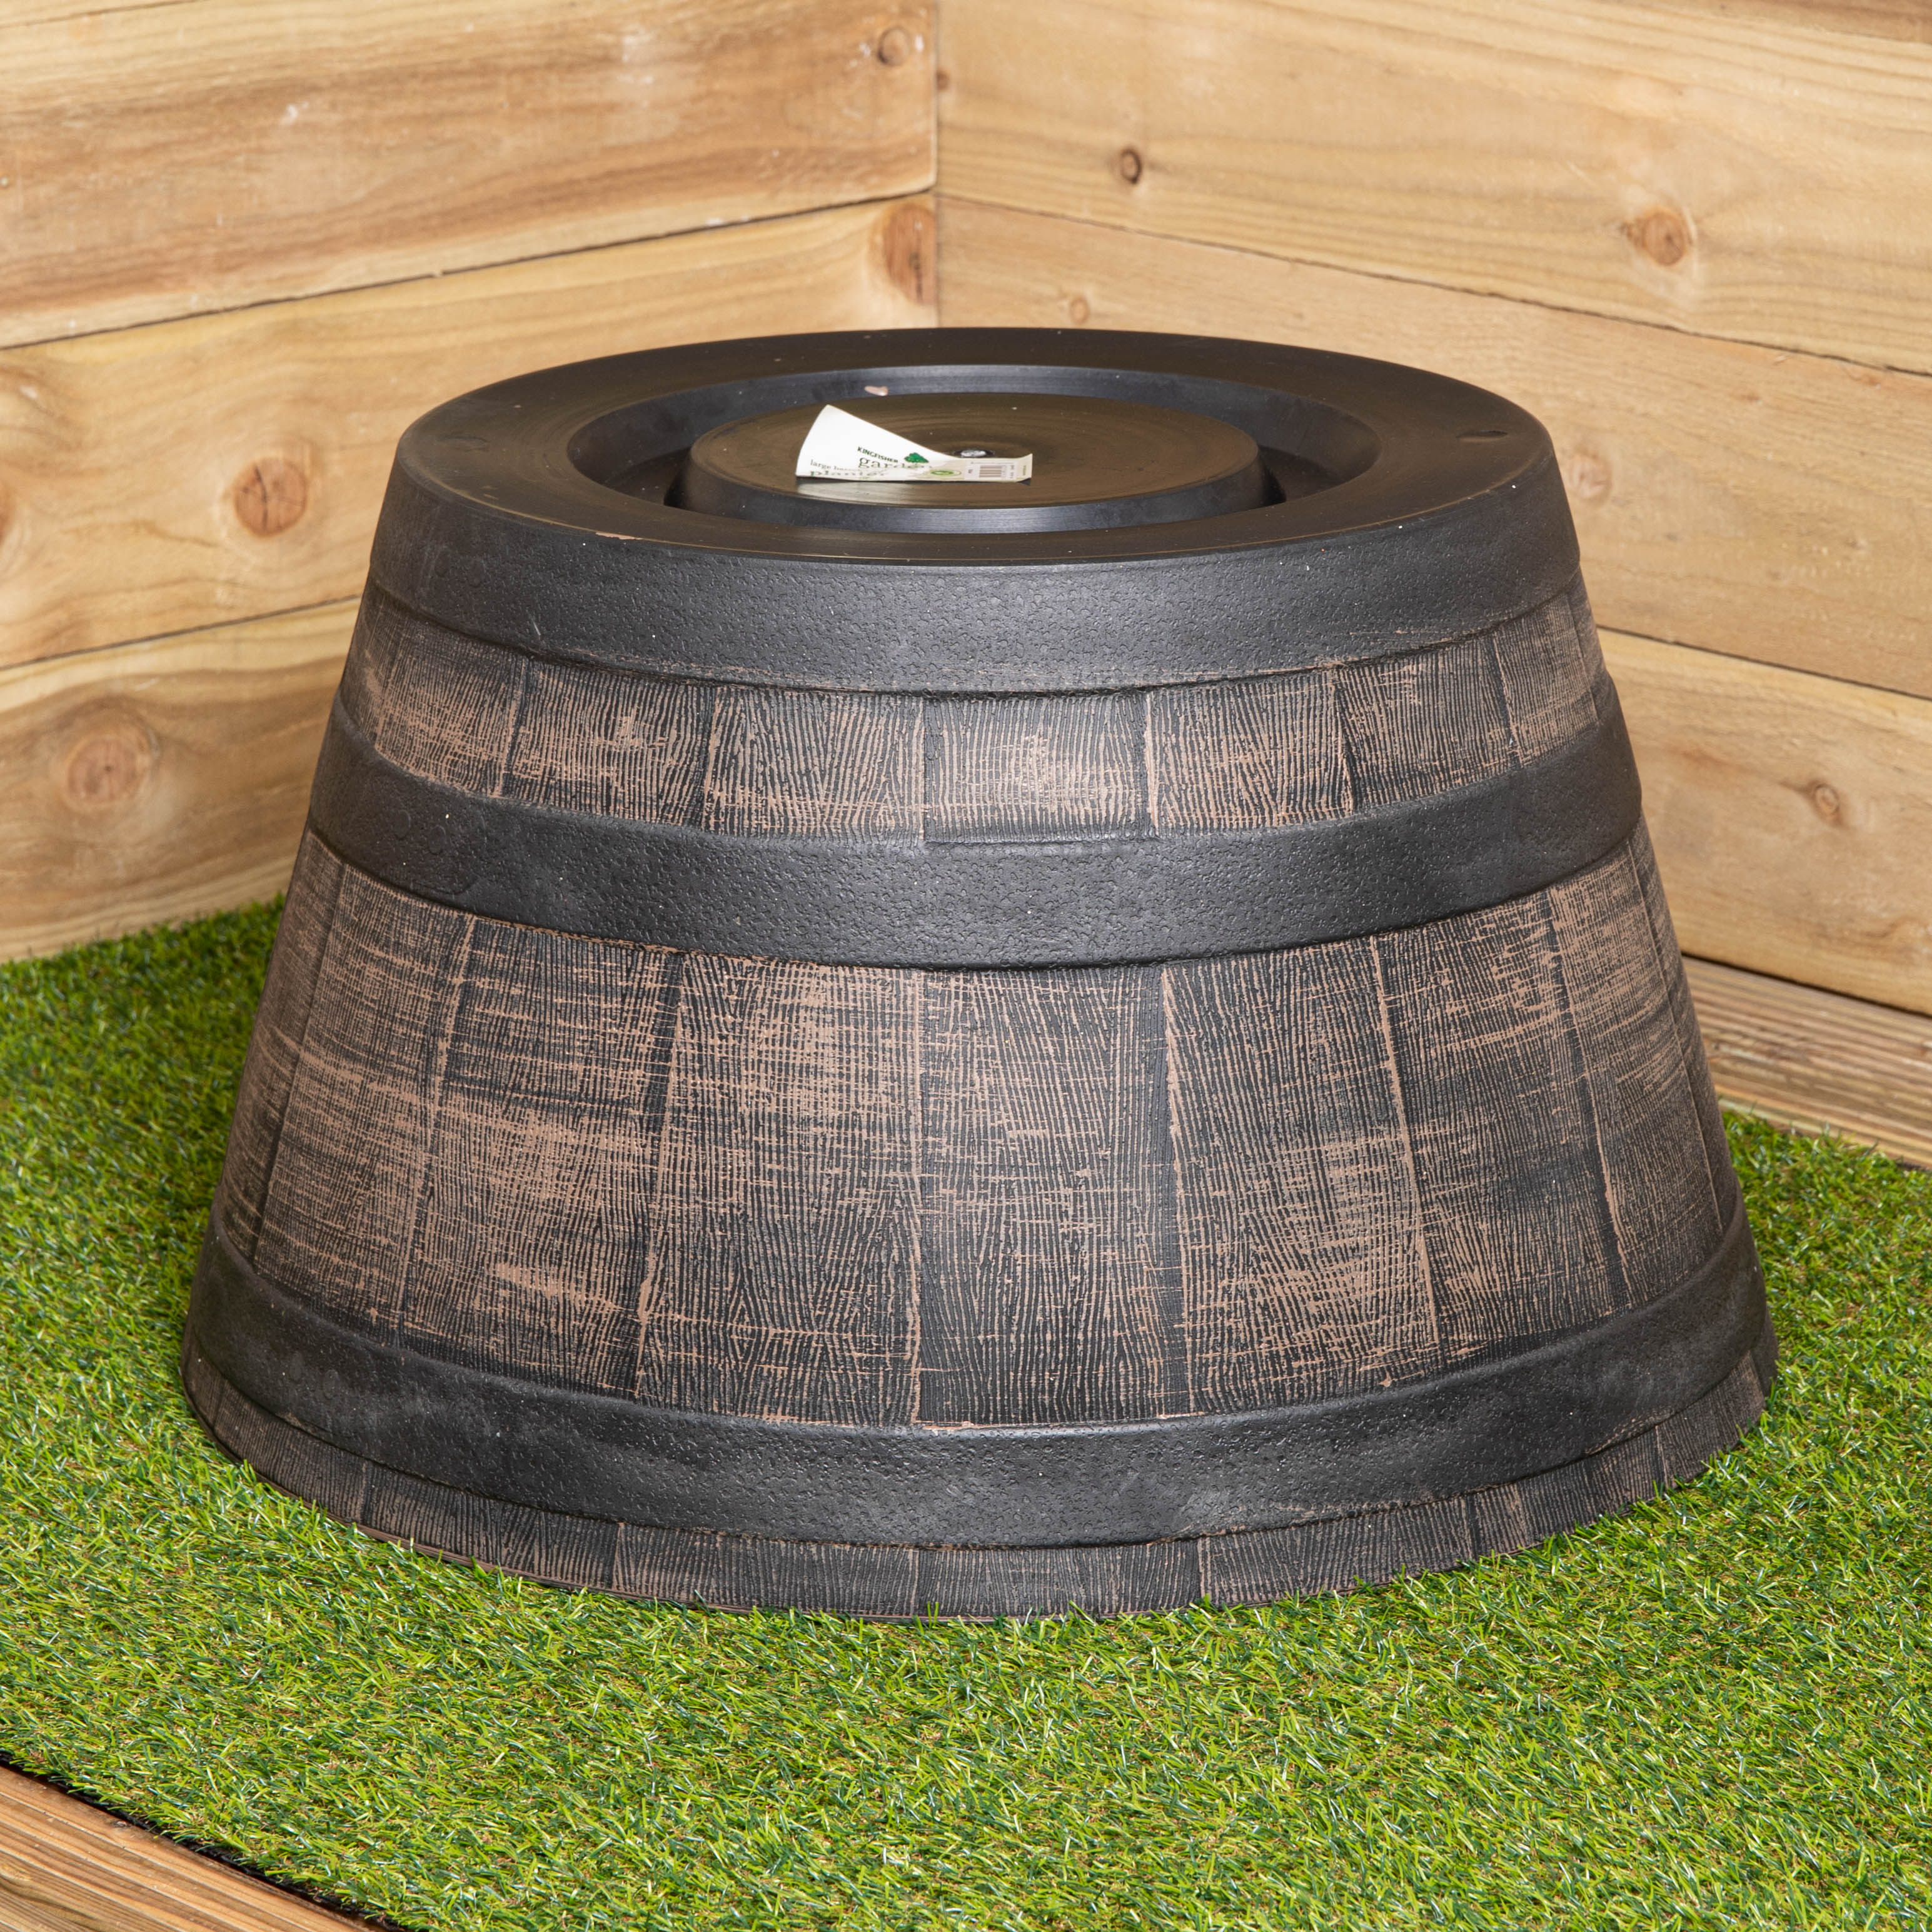 37cm Large Plastic Oak Wood Barrel Effect Decorative Garden Patio Trough Planter